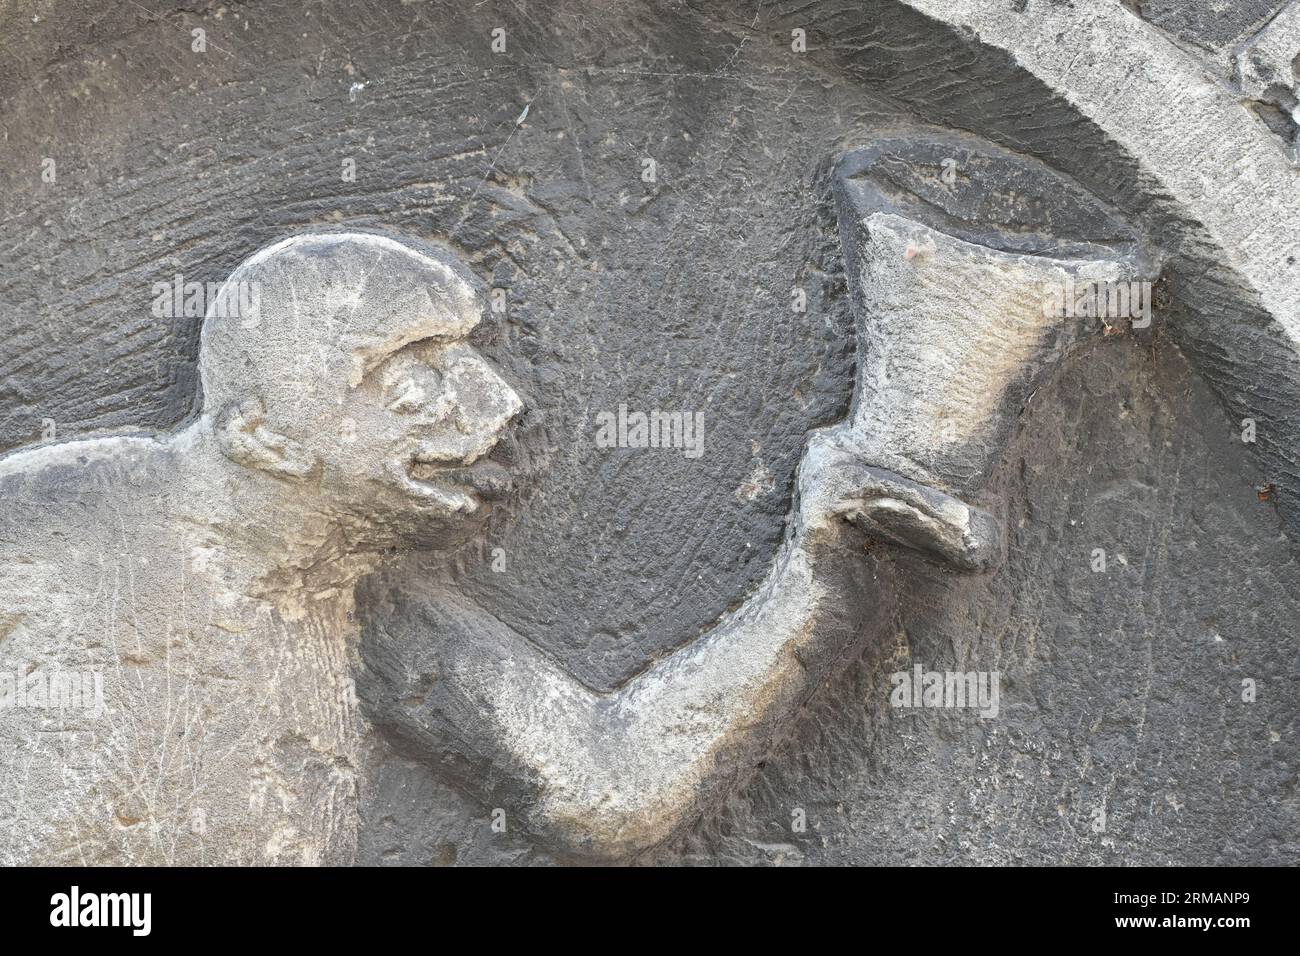 Mittelalterliche Skulptur am Rathaus von Stadthagen: Es ist unklar, ob es sich um einen Affen oder einen betrunkenen Geliebten handelt Stockfoto